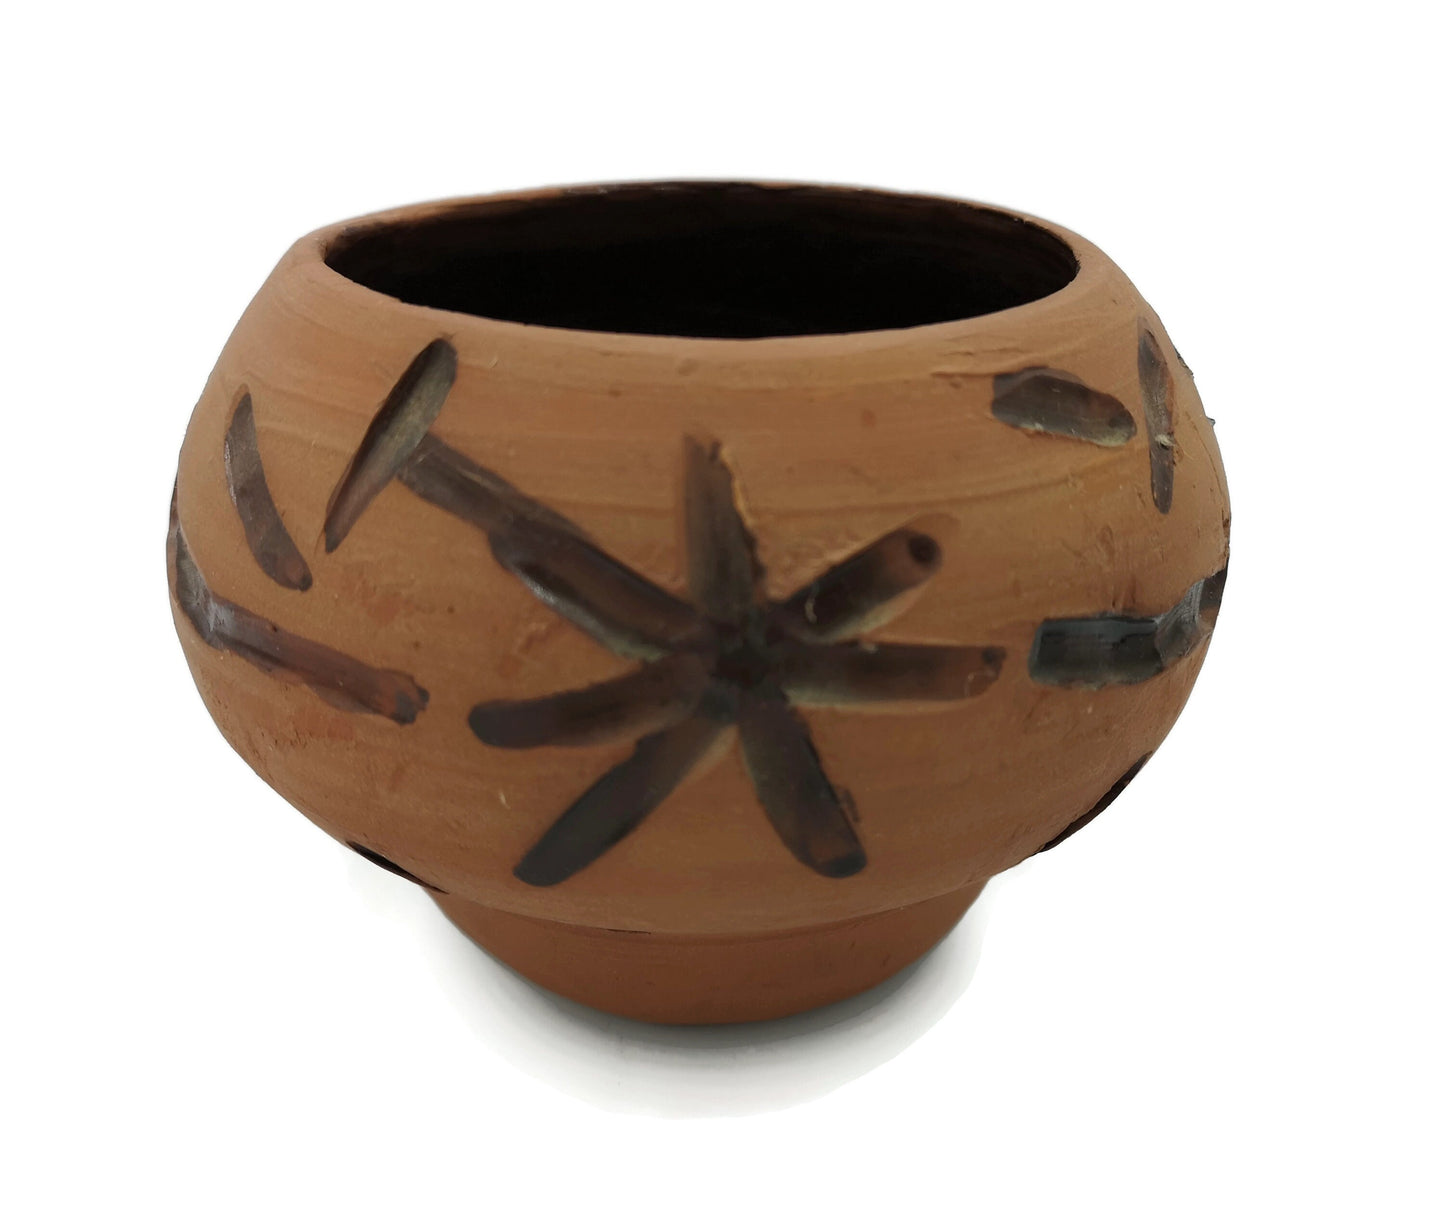 CERAMIC SUCCULENT PLANTER, Terracotta Cache Pot For Cactus, Ceramic Bud Vase Decorative, New Home Gift - Ceramica Ana Rafael